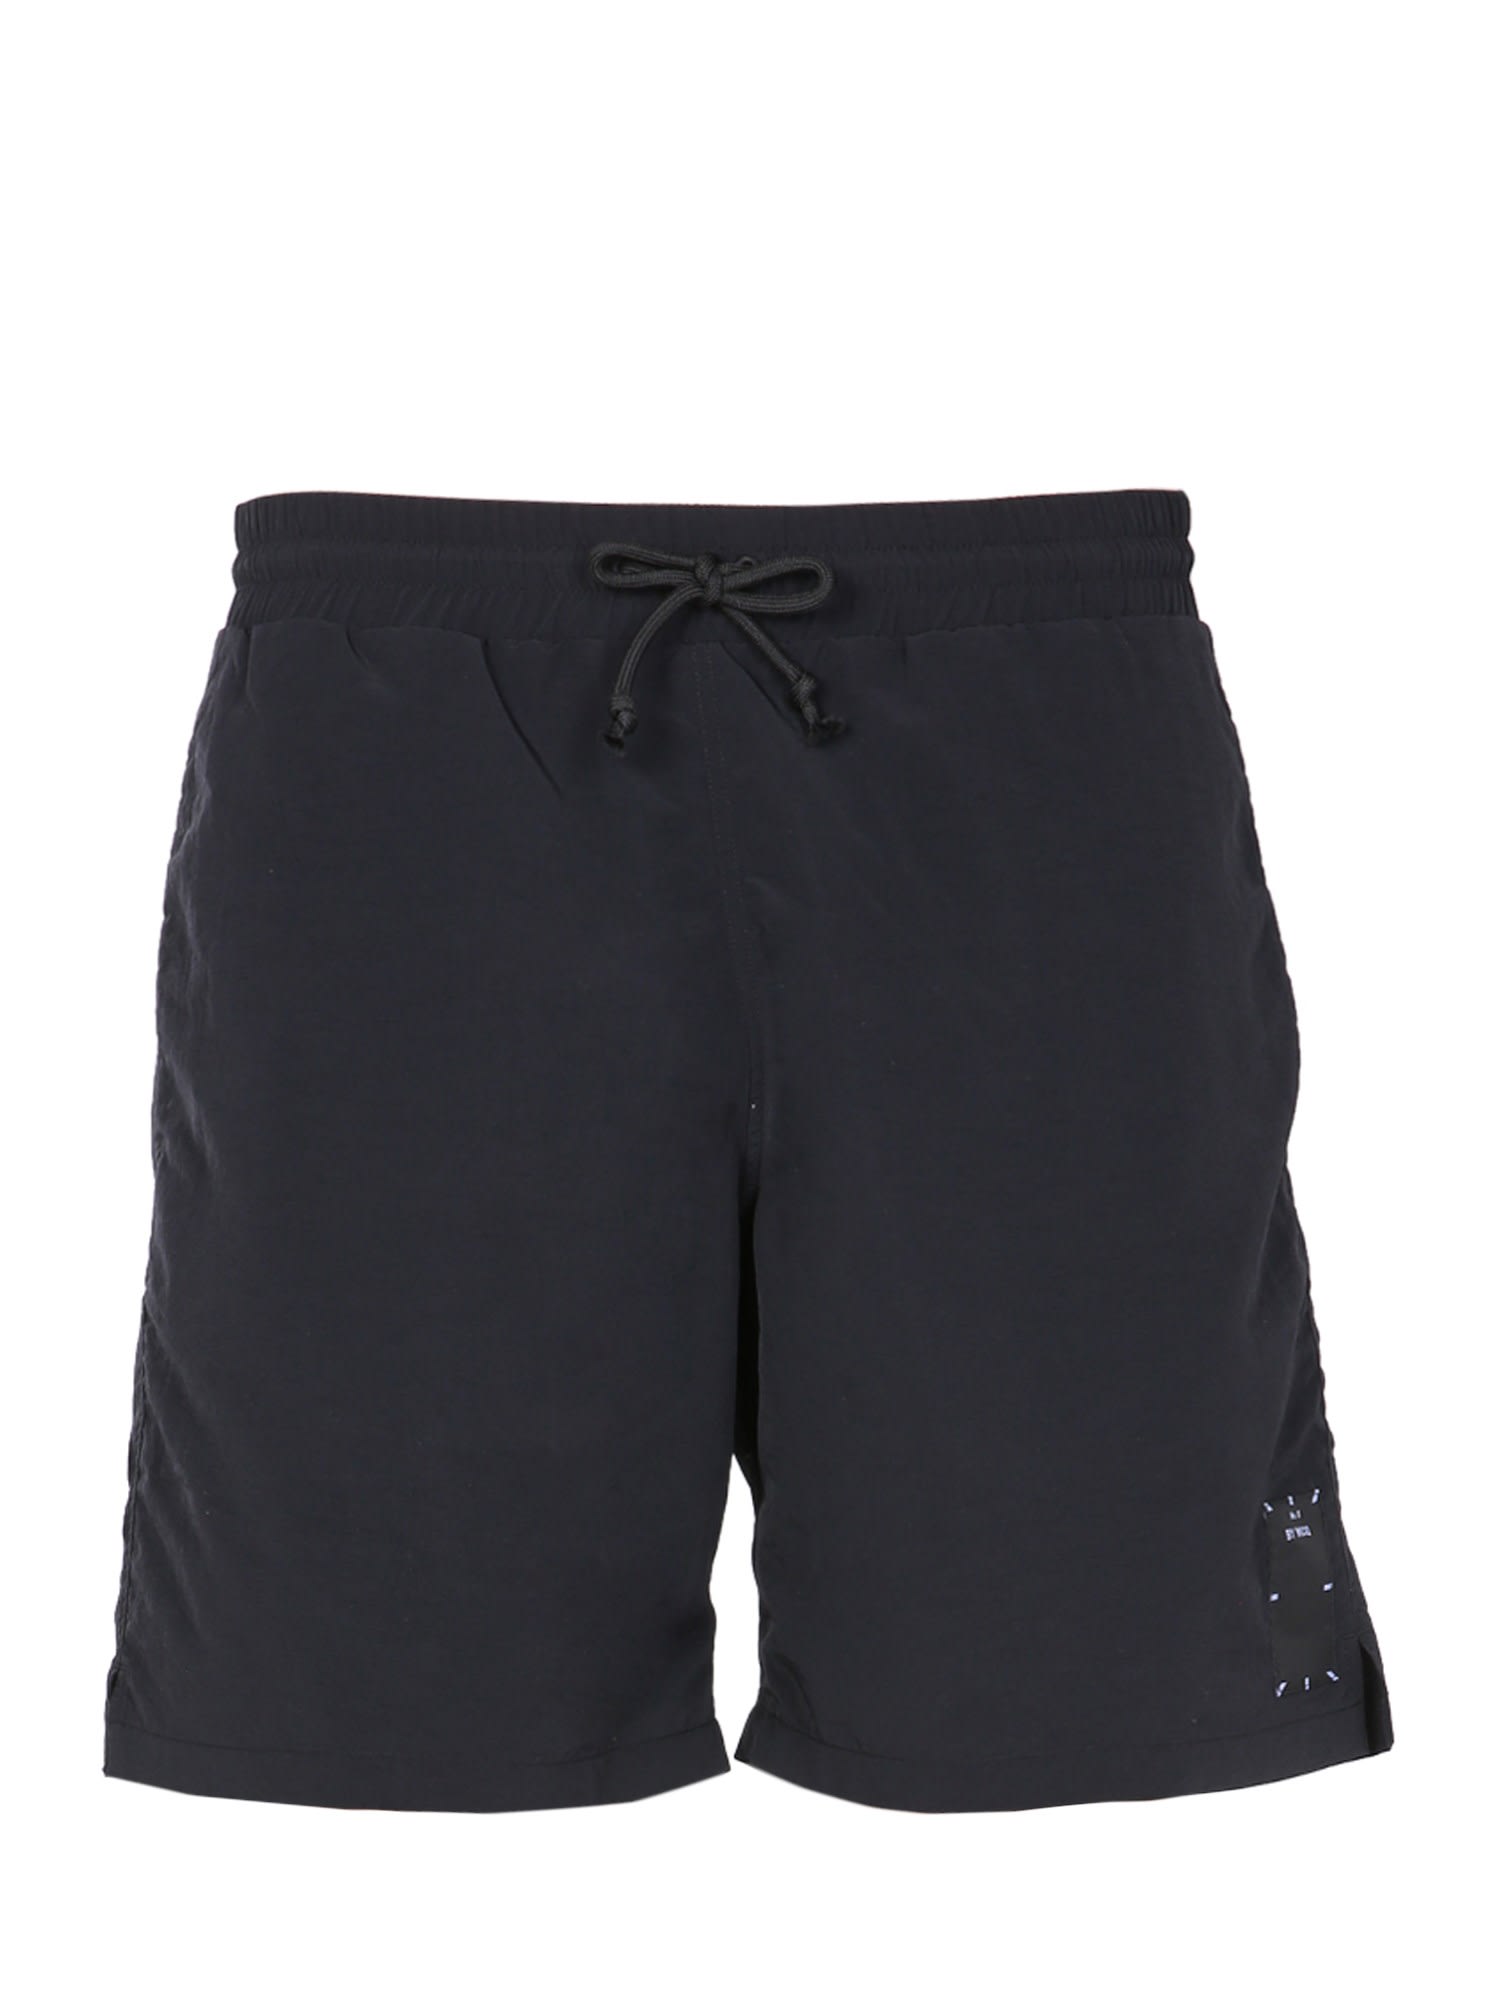 McQ Alexander McQueen Swimsuit Shorts